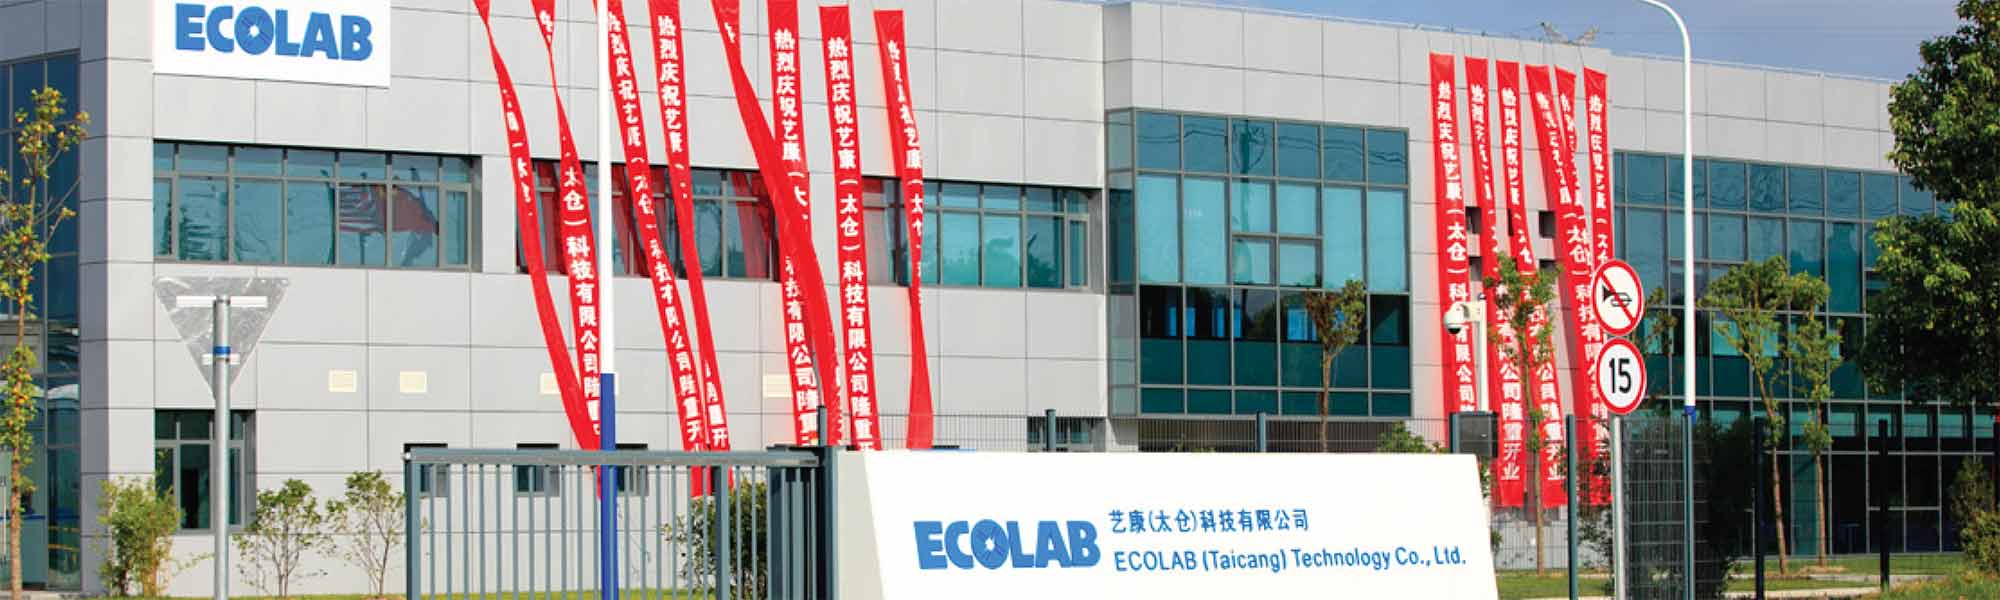 La planta de fabricación de Ecolab en Taicang (China), certificada como líder en administración del agua